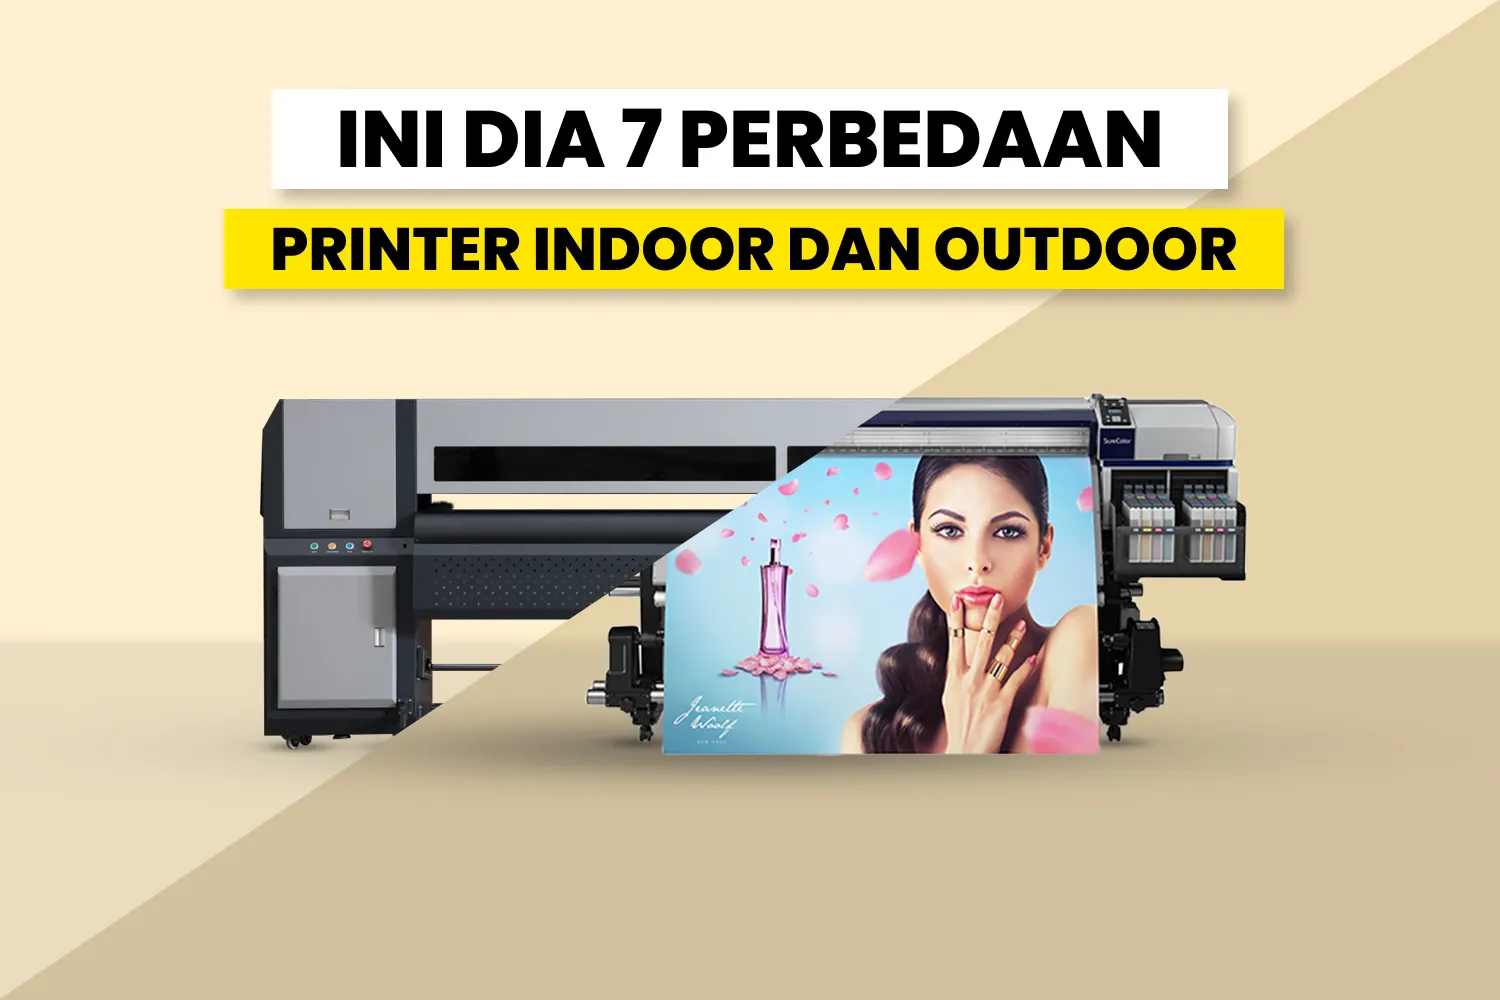 Perbedaan Printer Indoor Dan Outdoor.